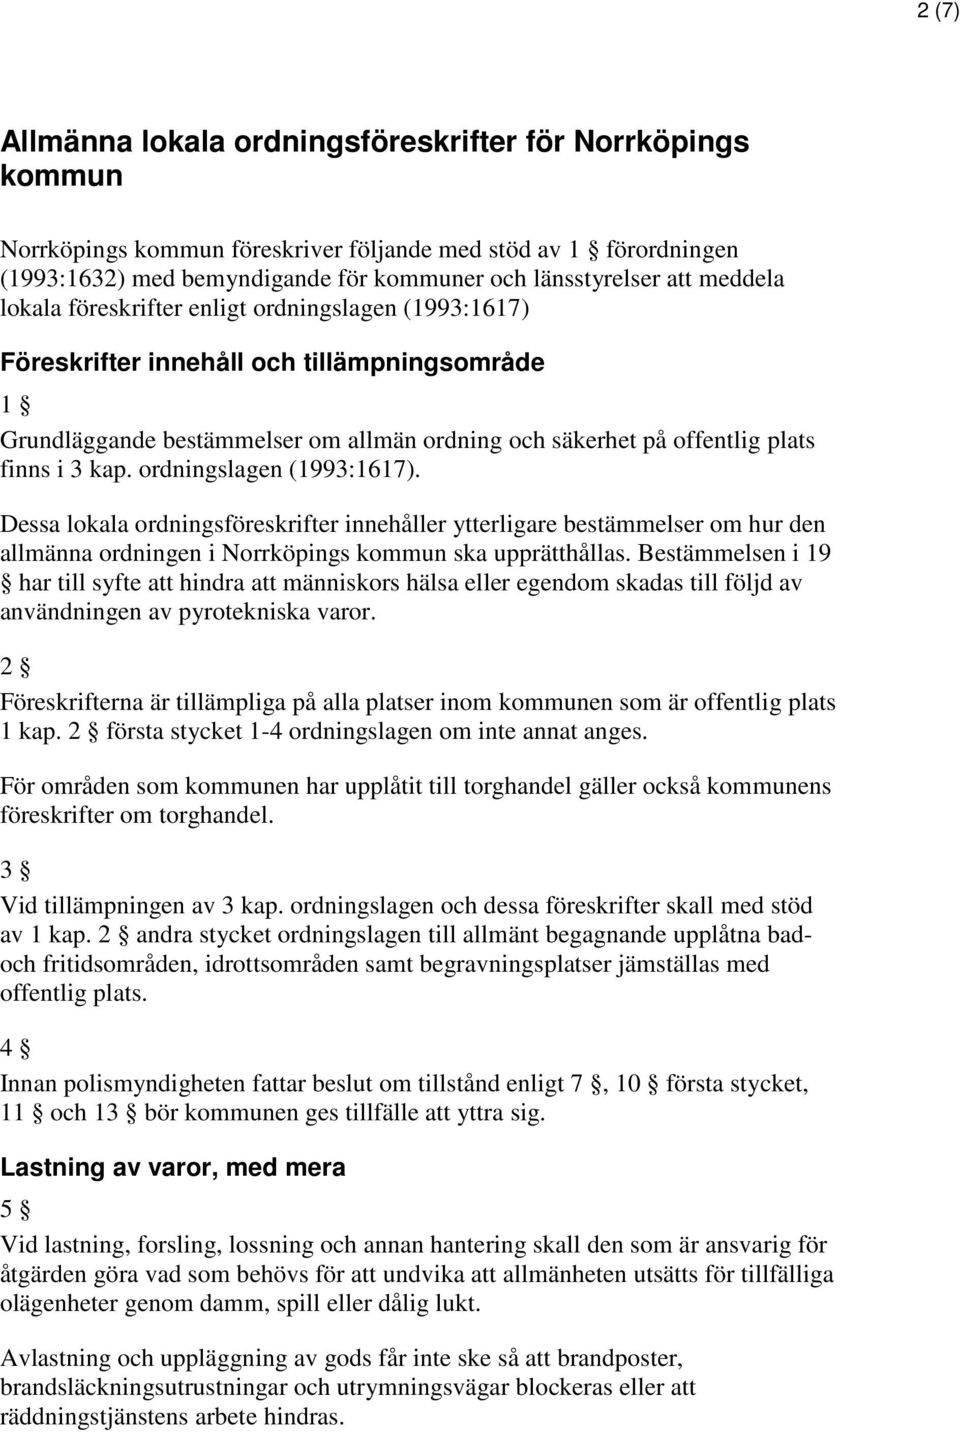 ordningslagen (1993:1617). Dessa lokala ordningsföreskrifter innehåller ytterligare bestämmelser om hur den allmänna ordningen i Norrköpings kommun ska upprätthållas.